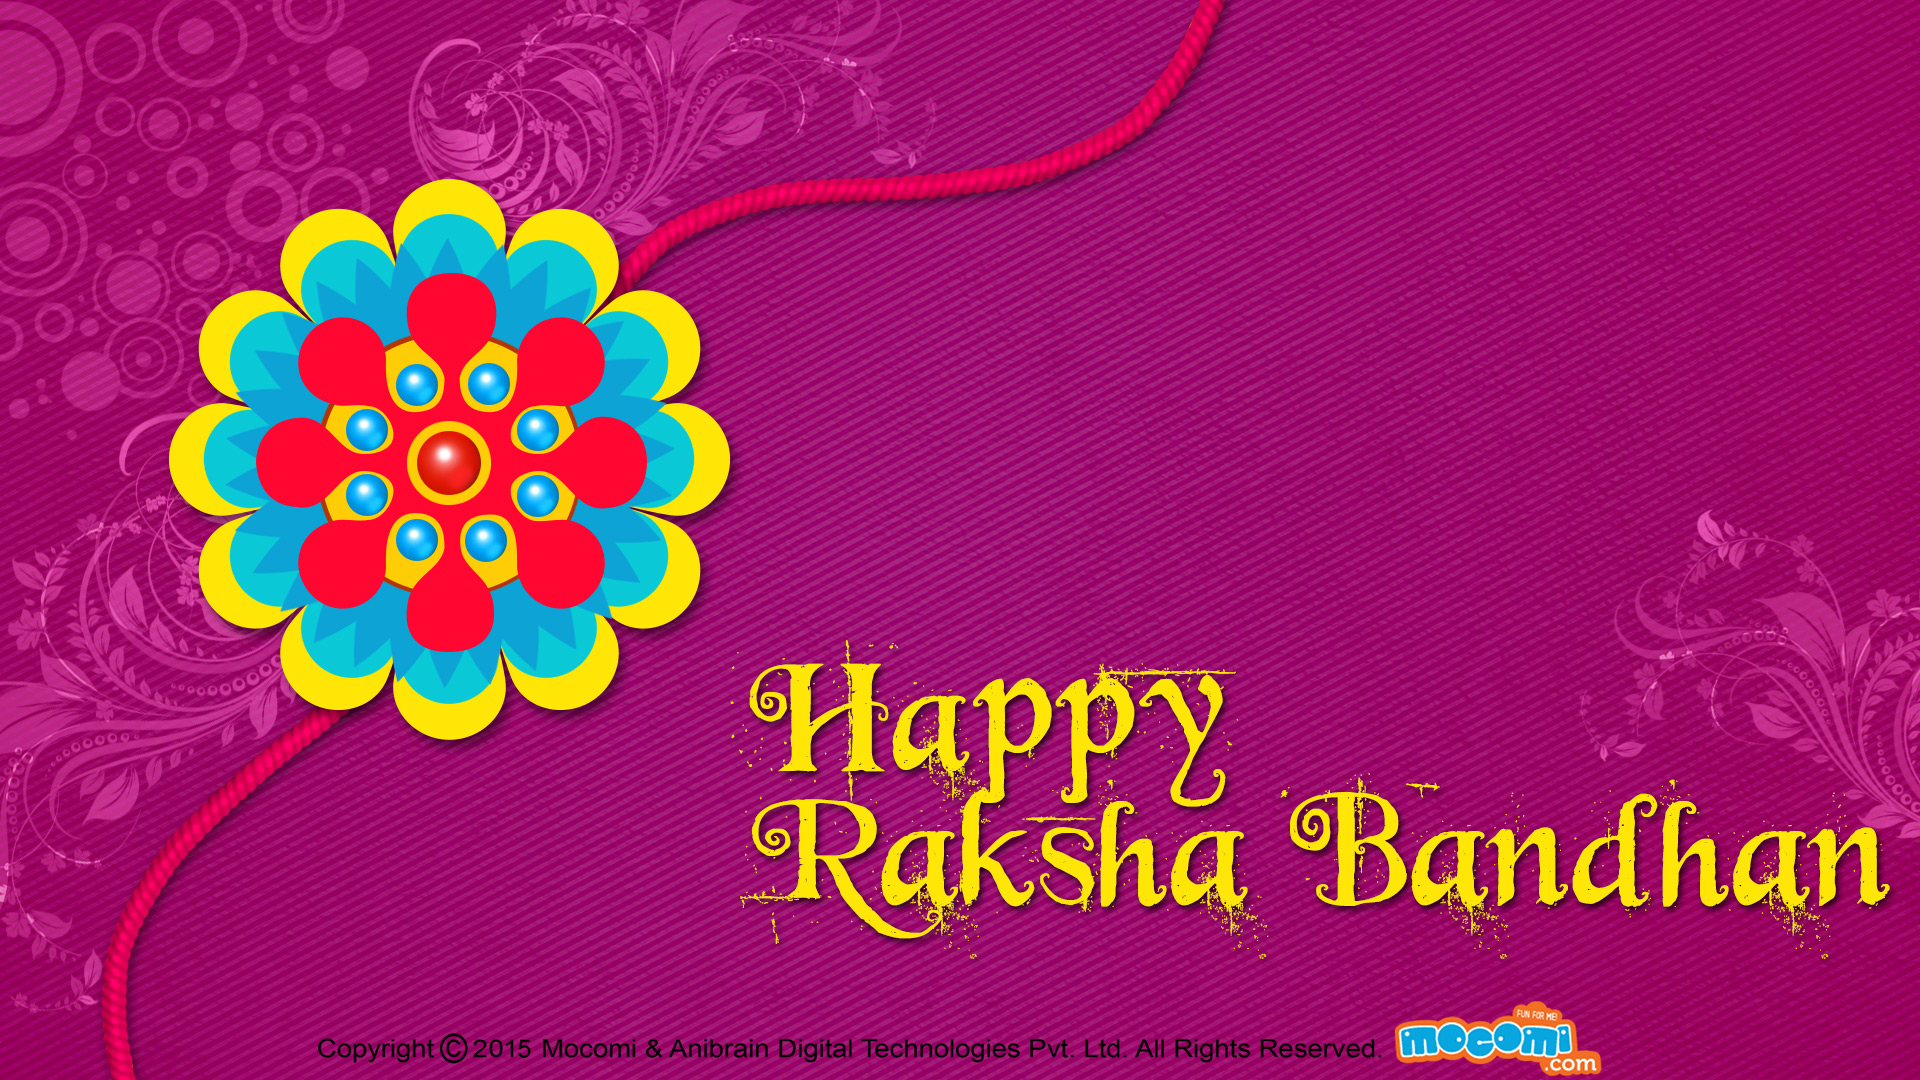 Happy raksha bandhan